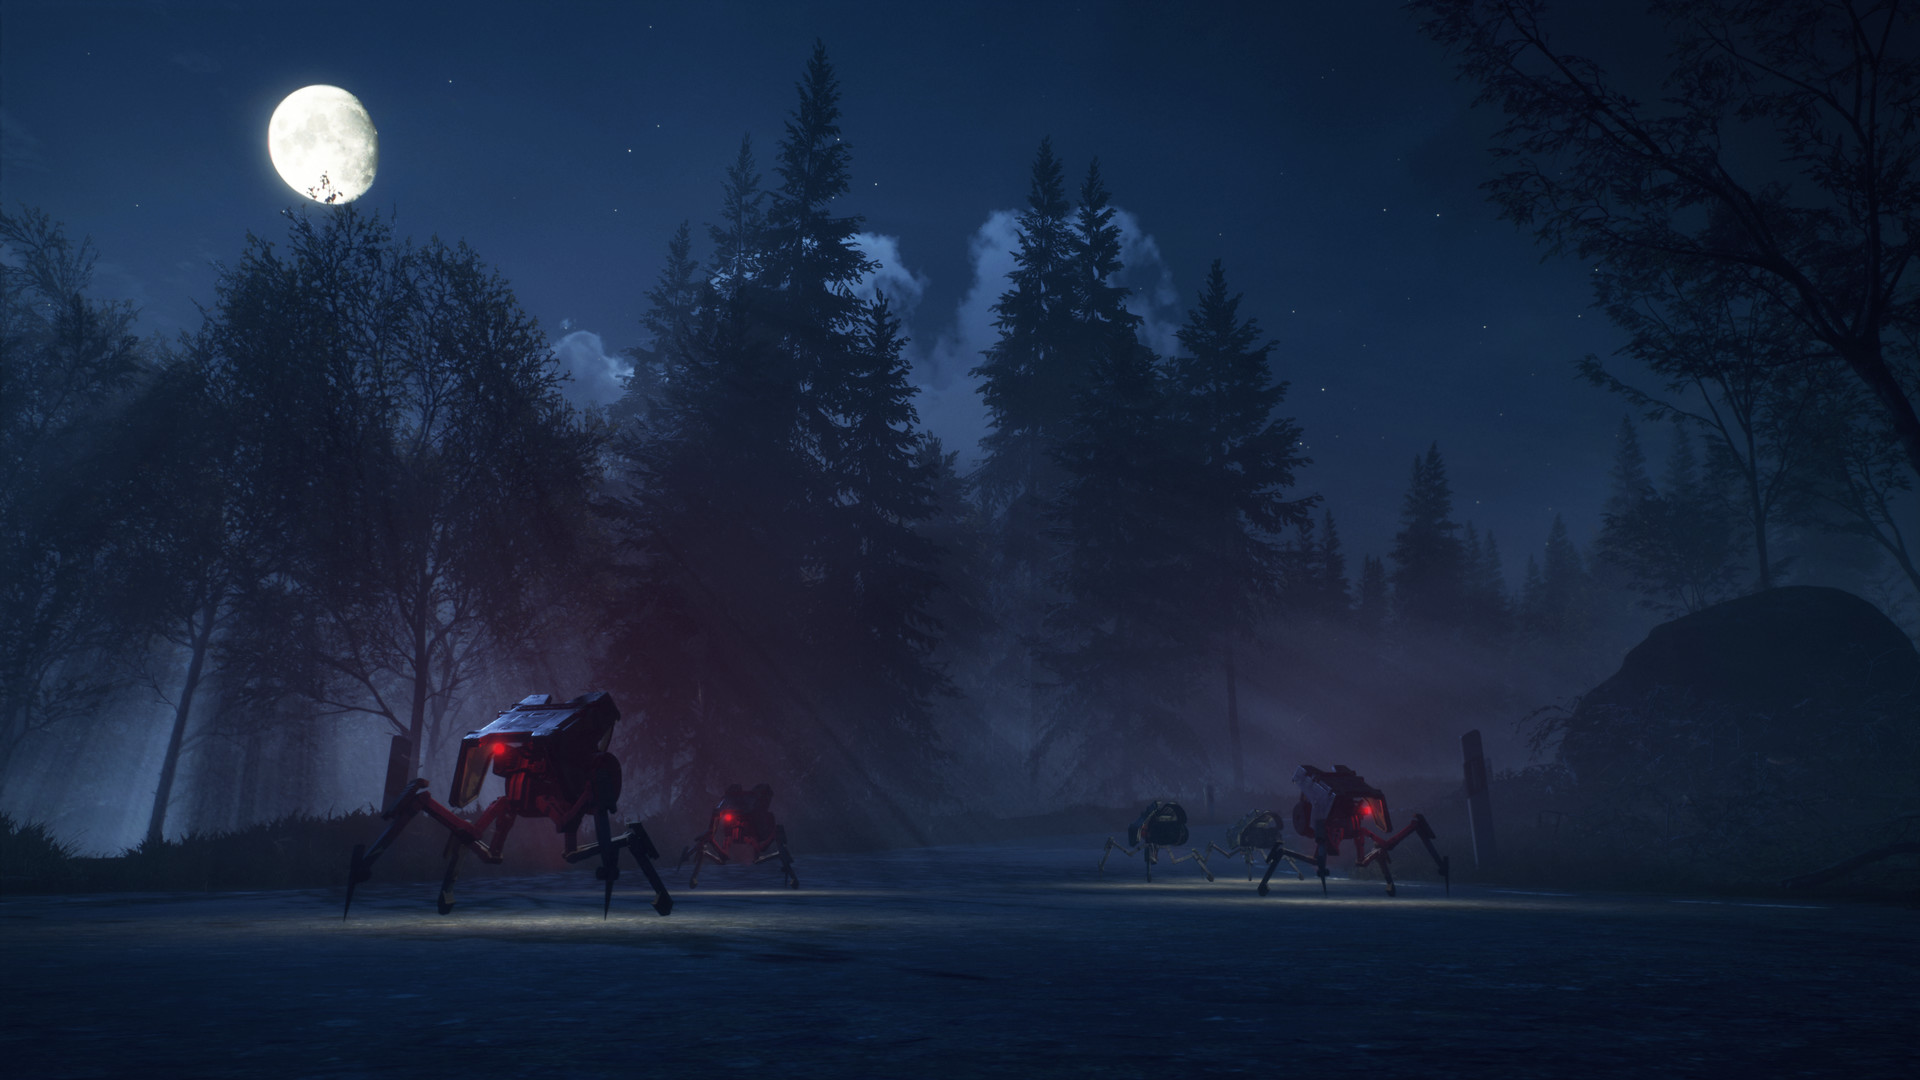 Avalanche ekibi, yeni Generation Zero isimli yeni oyunlarını duyurdu